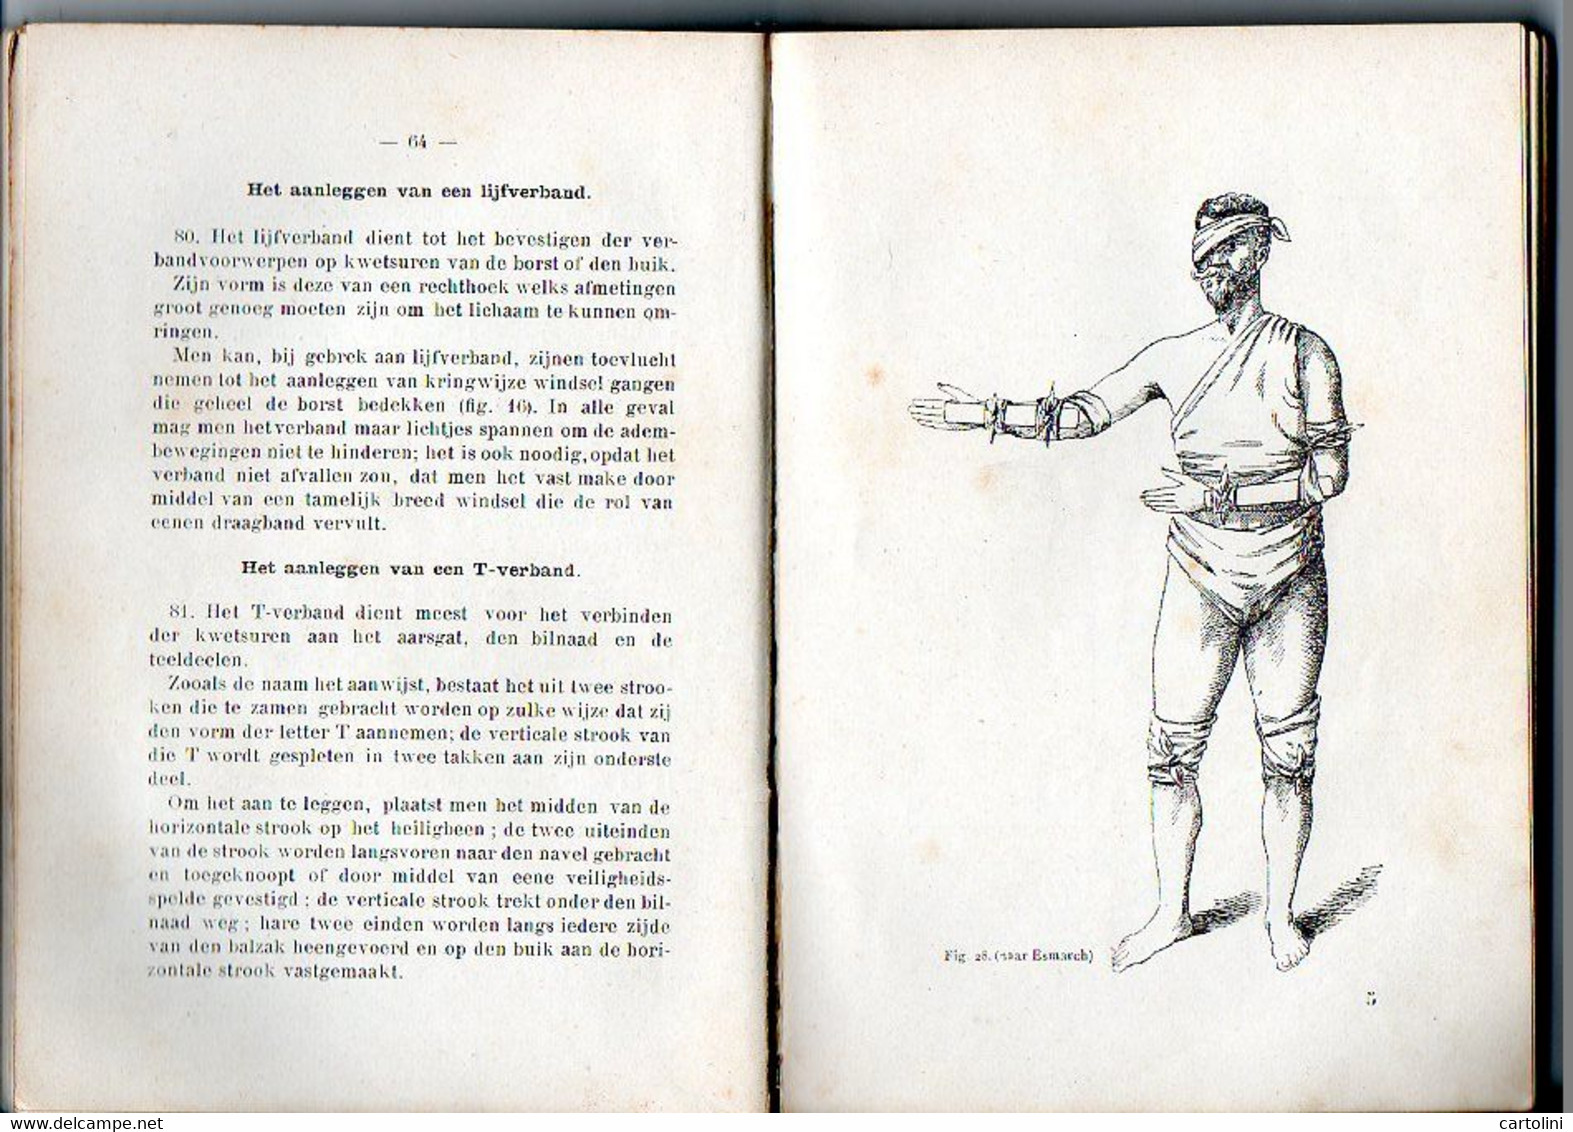 Zeldzaam Militair Militairen Ziekendrager Uitgave 1902 Met 92 Afbeeldingen 232 Blz - Holandés